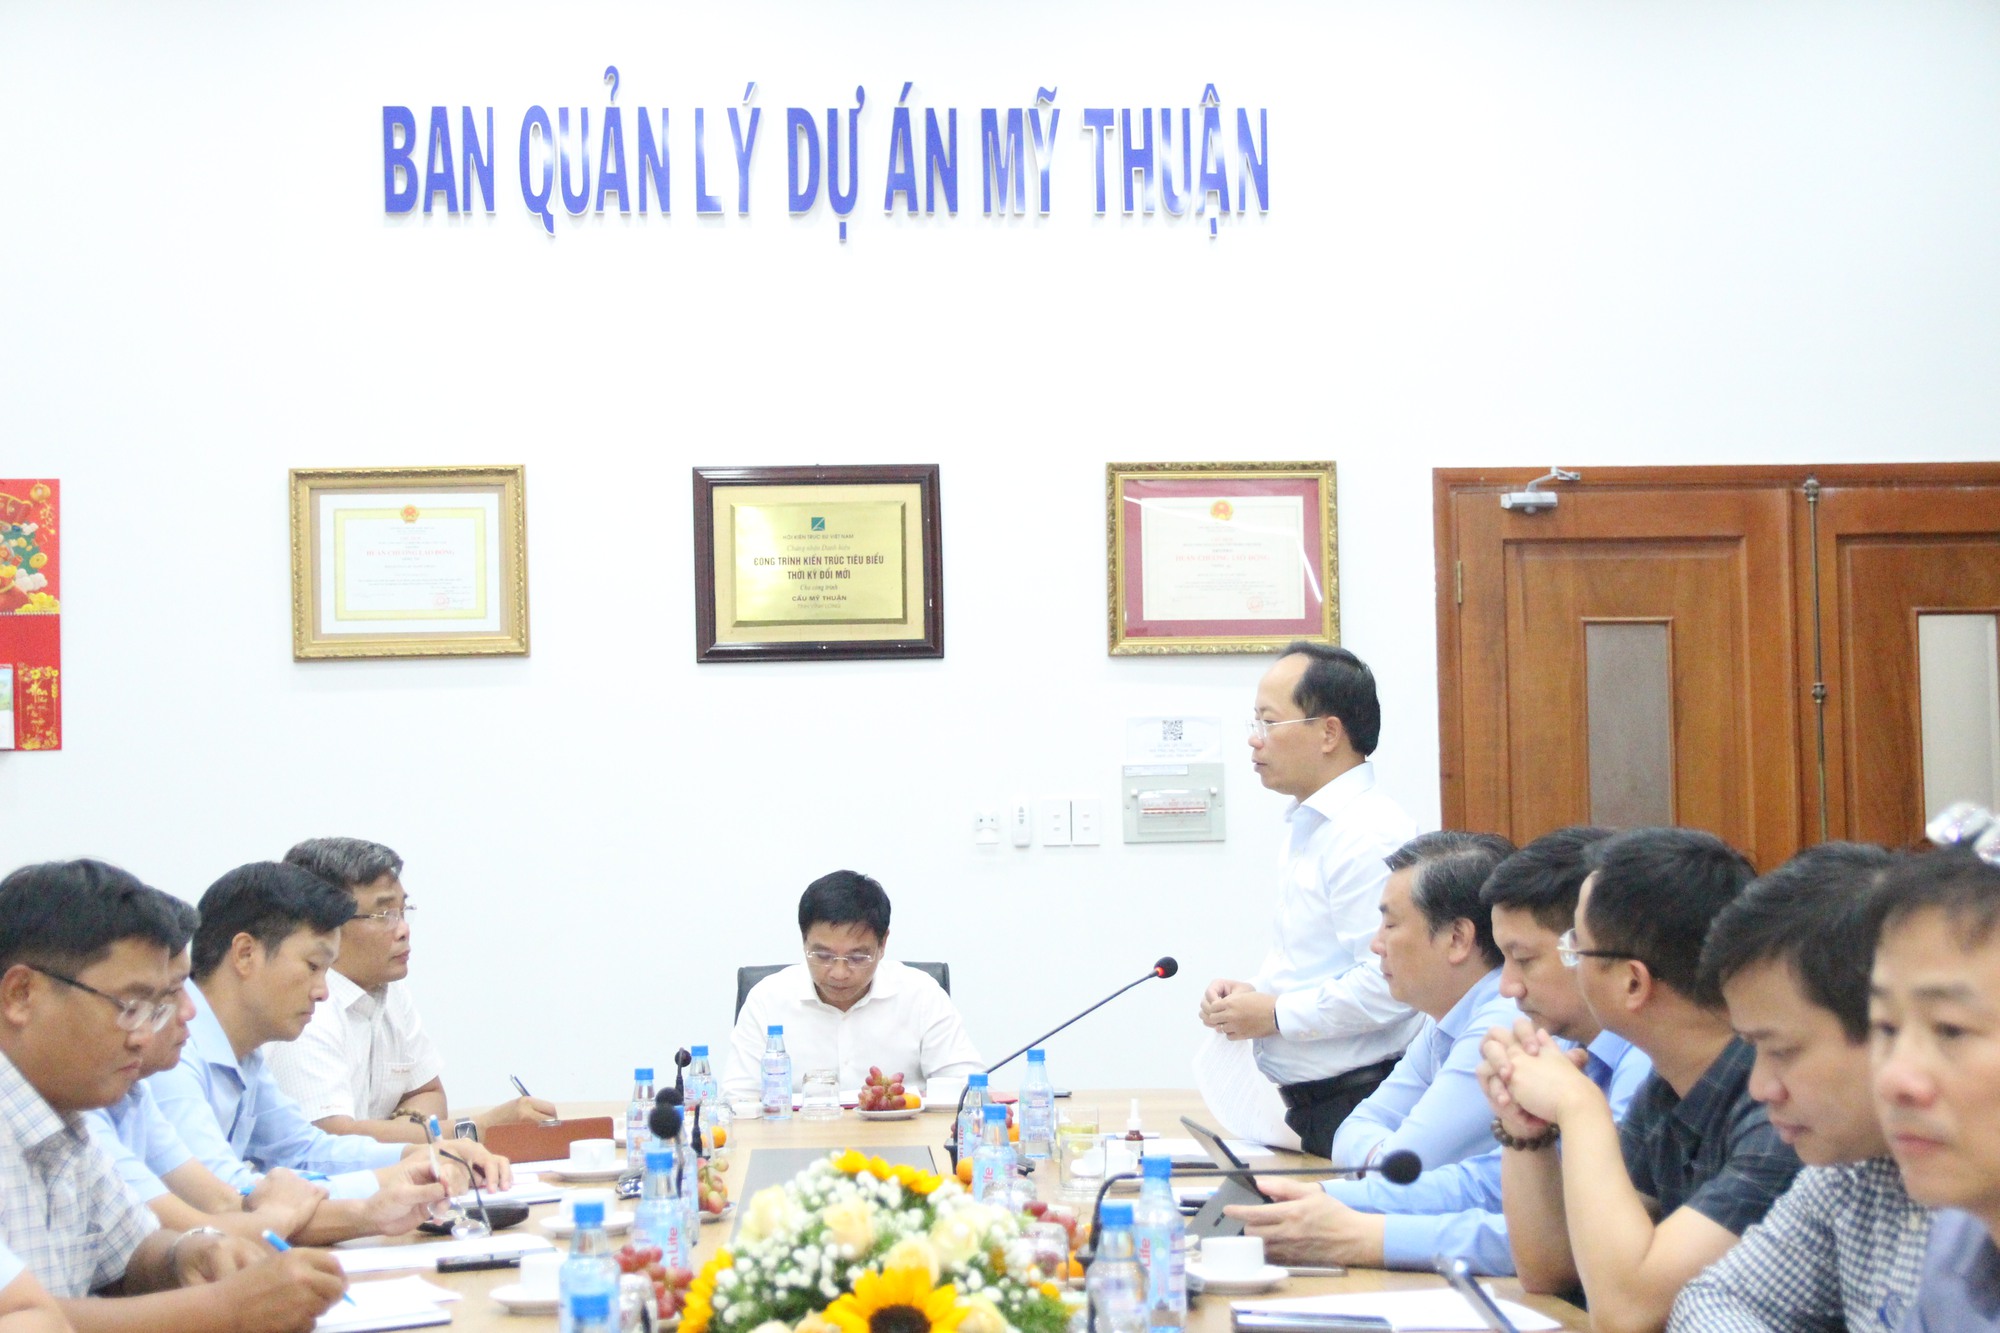 Bộ trưởng Nguyễn Văn Thắng: Ban QLDA Mỹ Thuận cần đoàn kết, tiếp tục bứt phá- Ảnh 1.